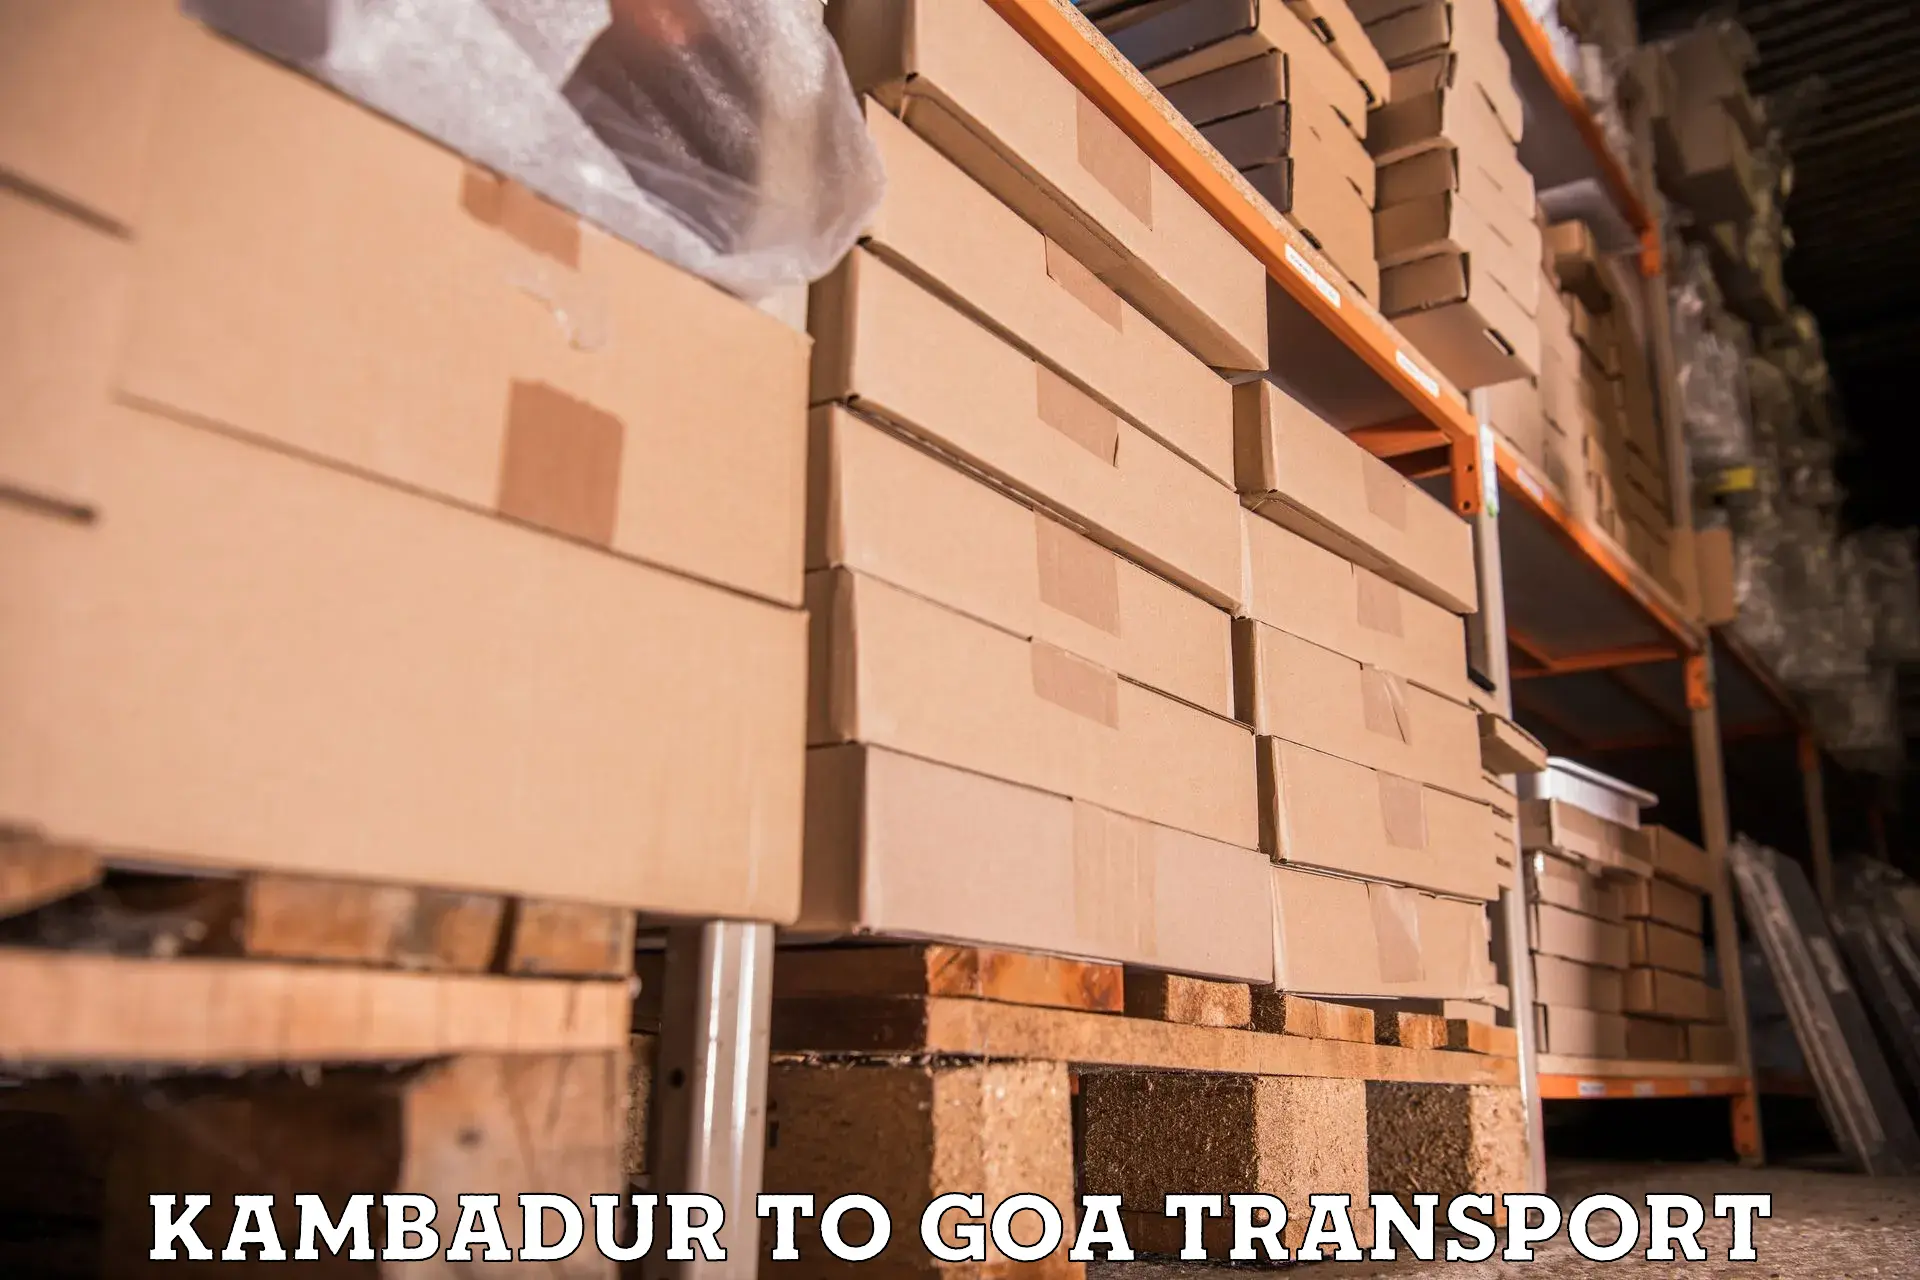 Transport shared services Kambadur to Goa University